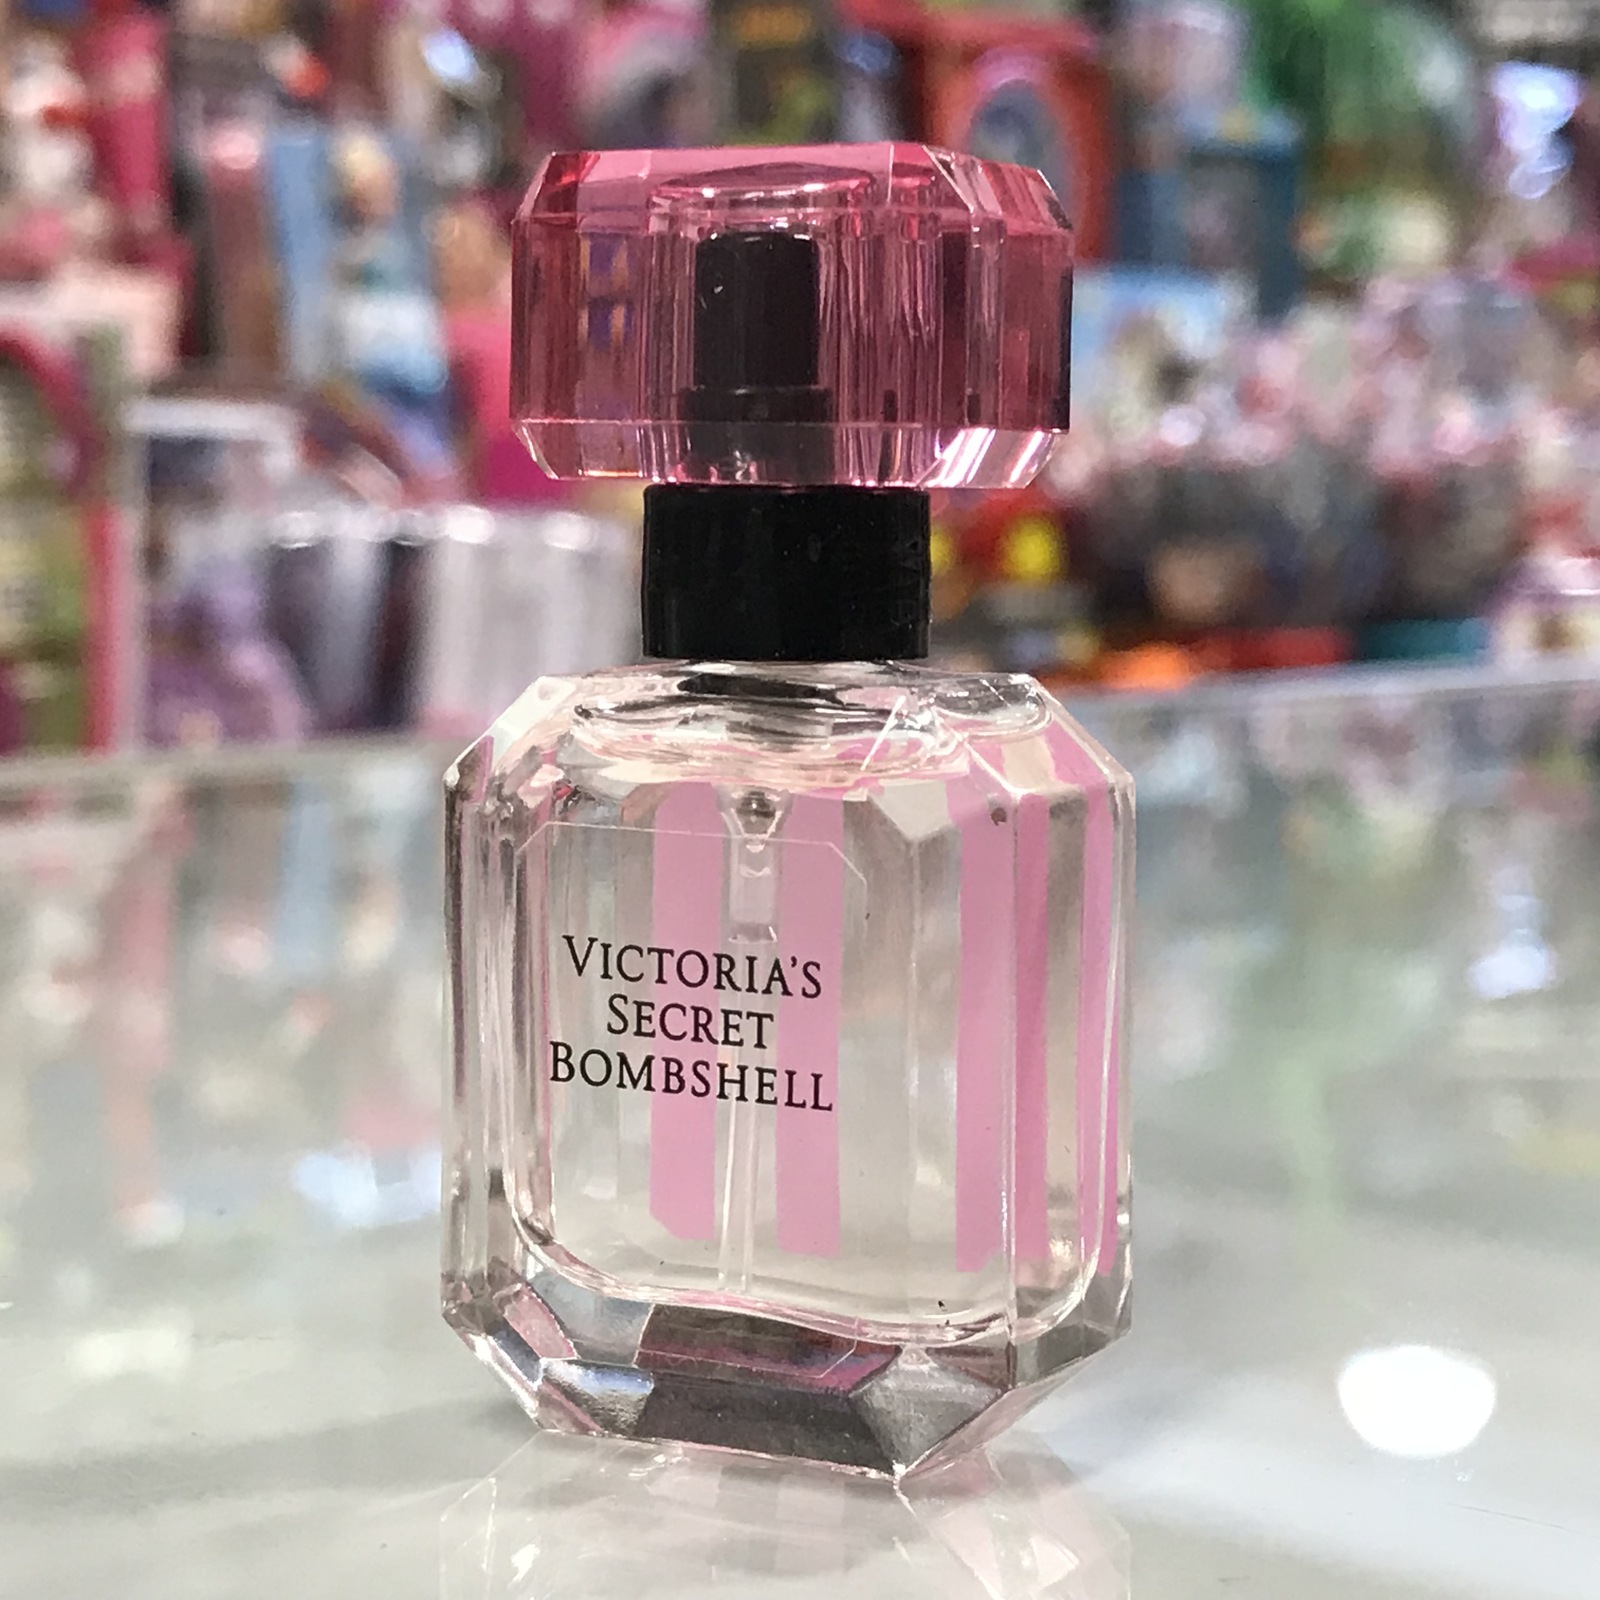 Vintage Authentic CHANEL No 5 Eau De Parfum REFILLABLE Spray 